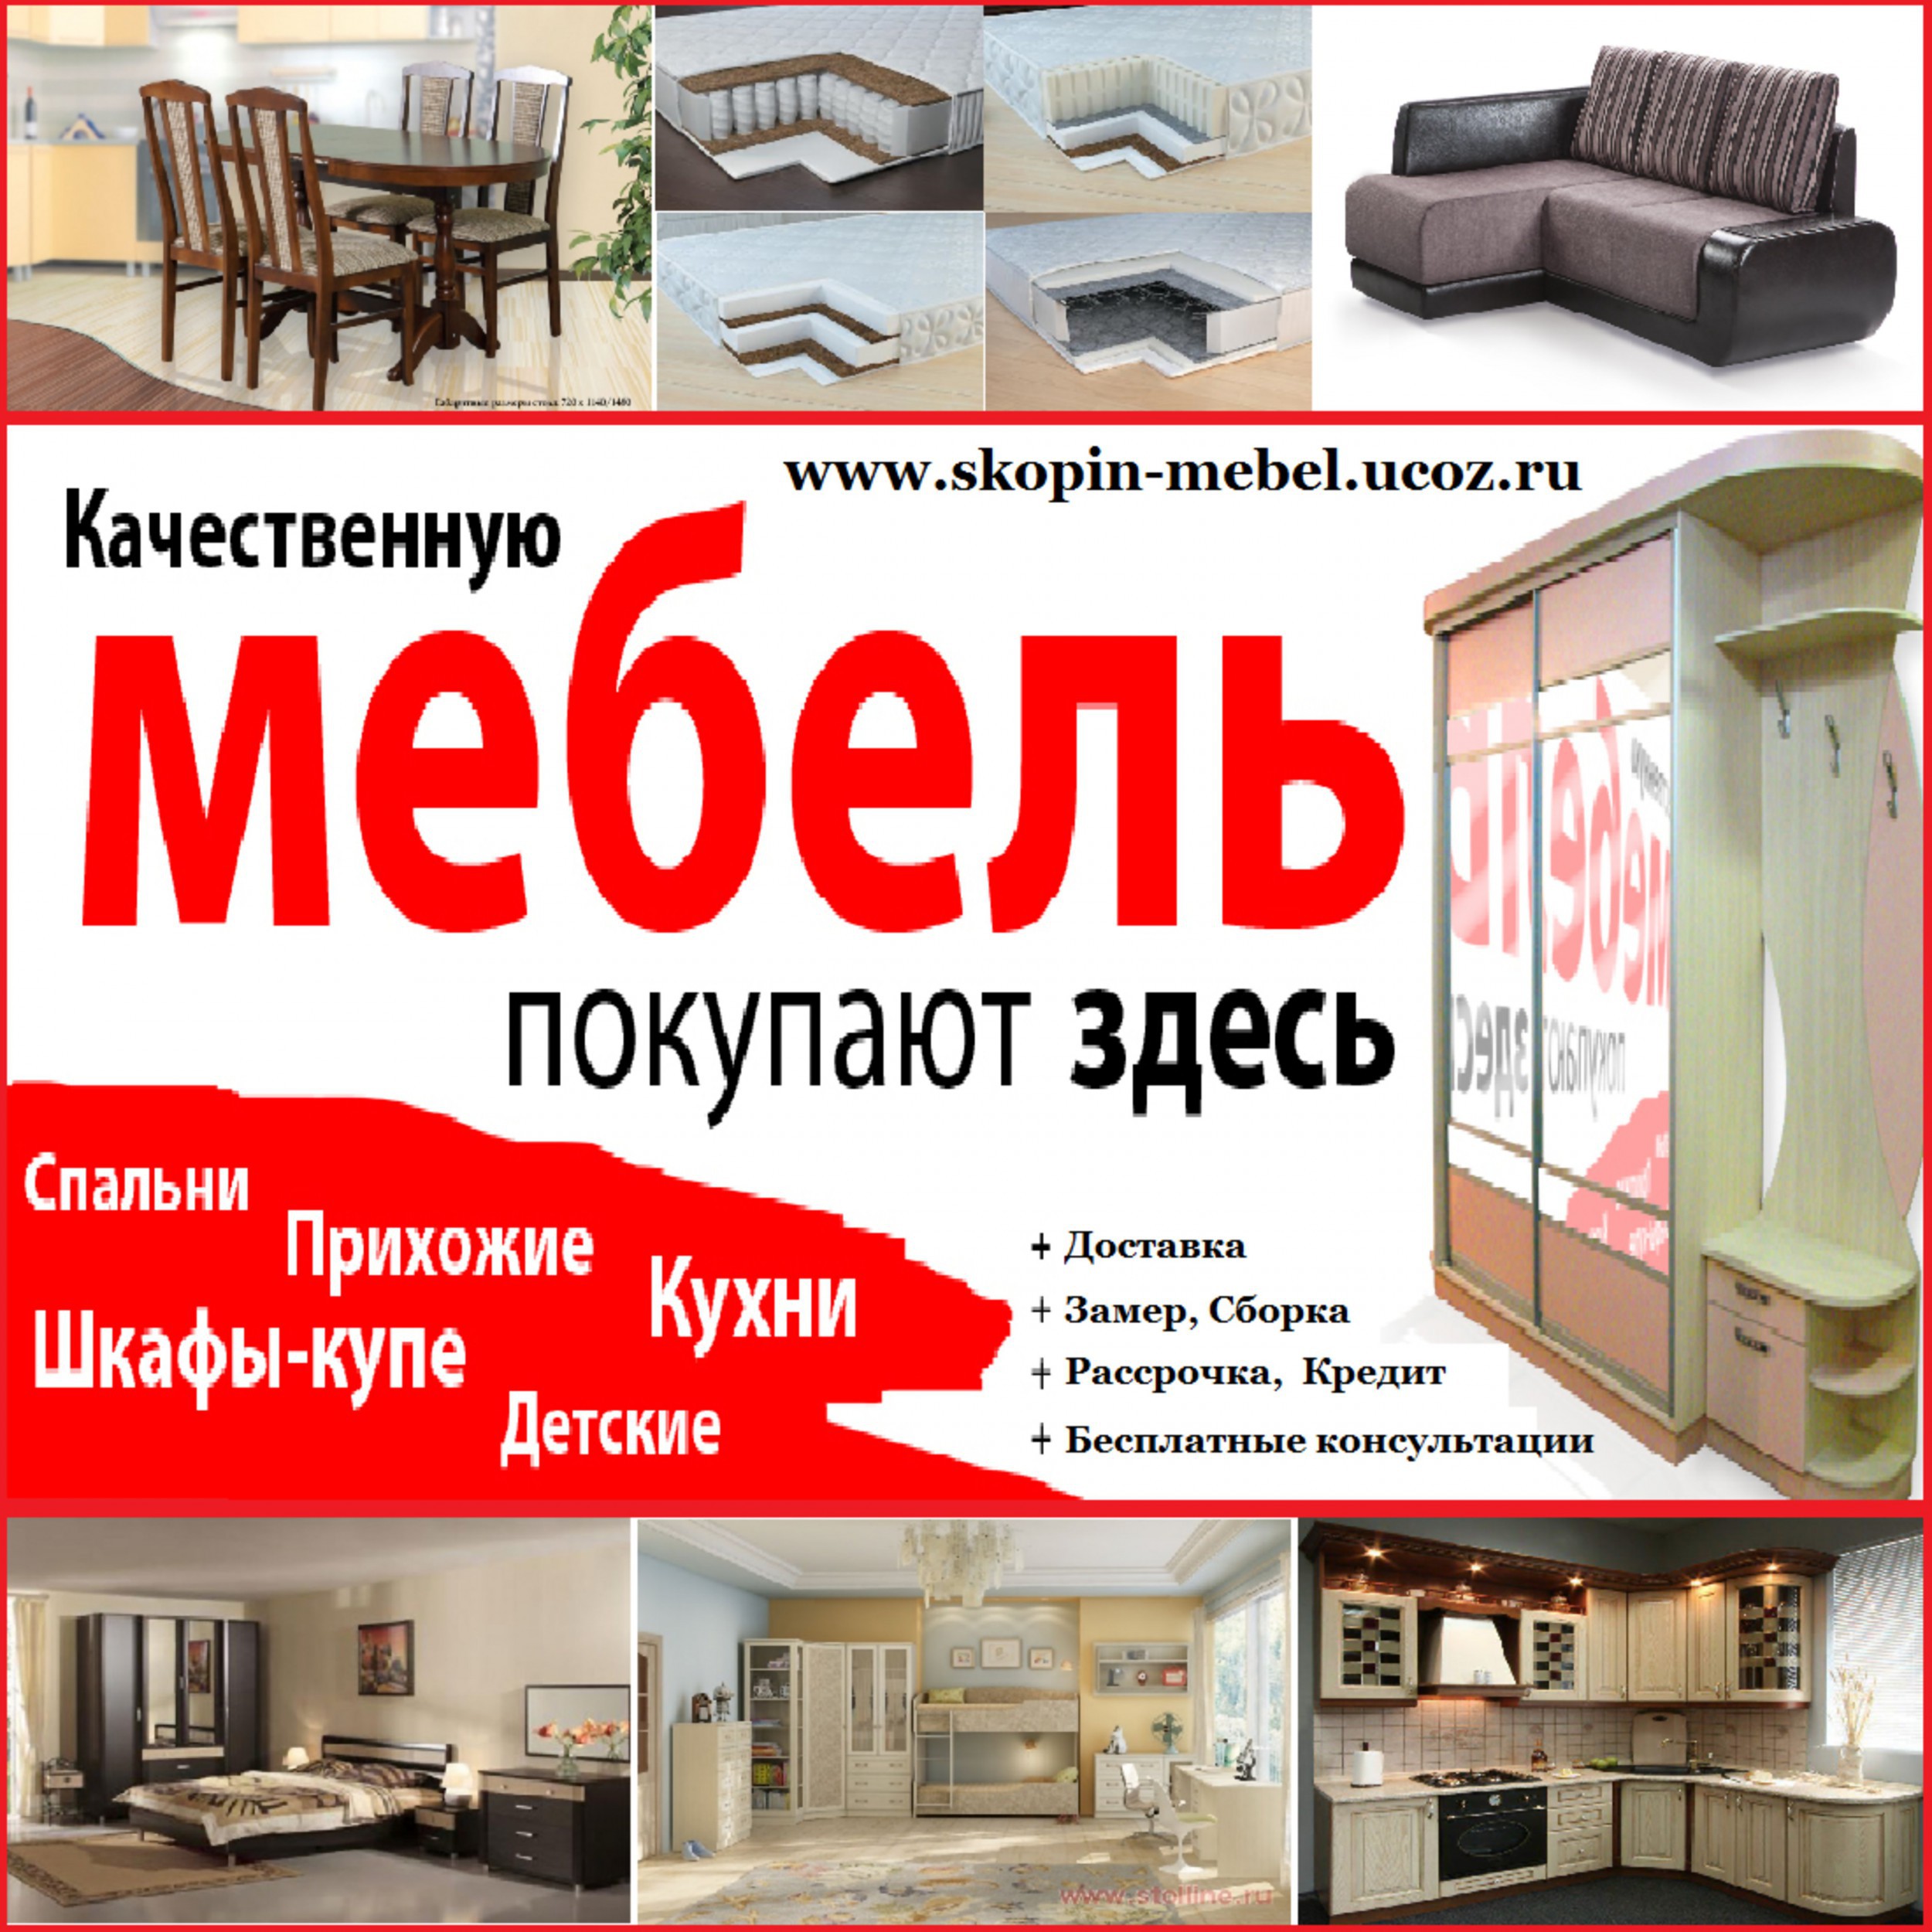 Реклама мебели